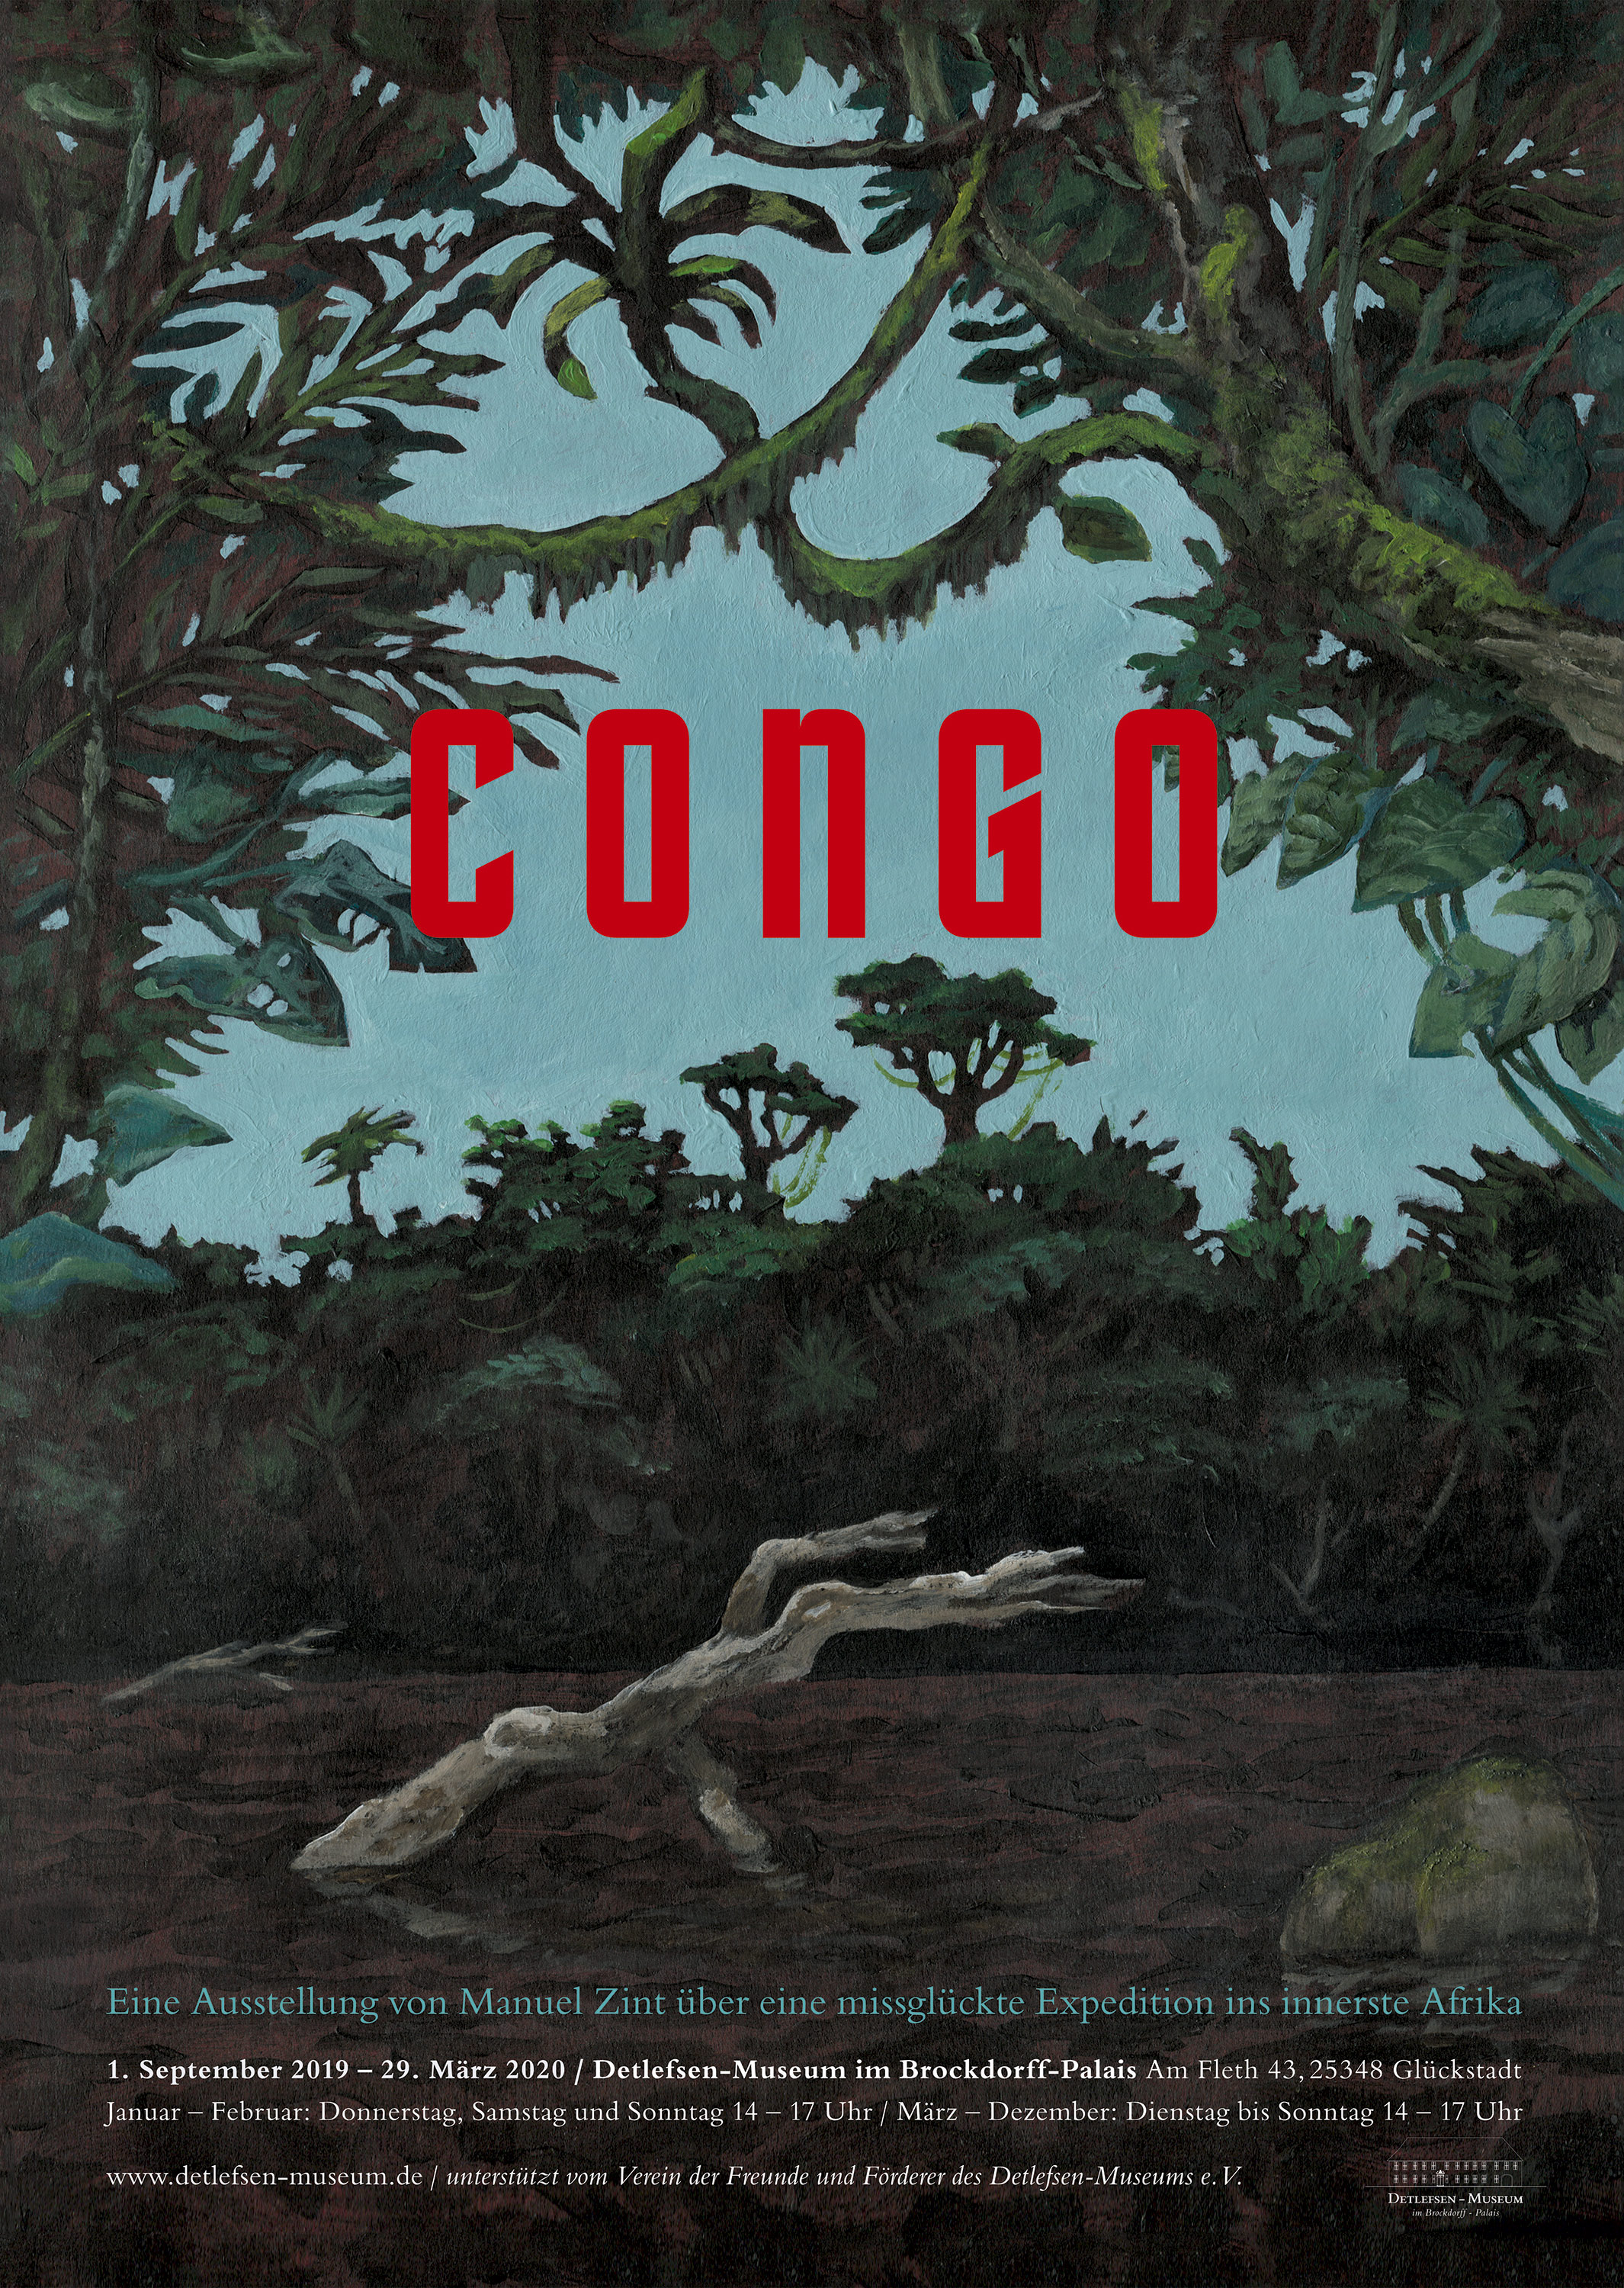 Plakat Congo, eine Ausstellung im Detlefsen-Museum, Glckstadt von Manuel Zint